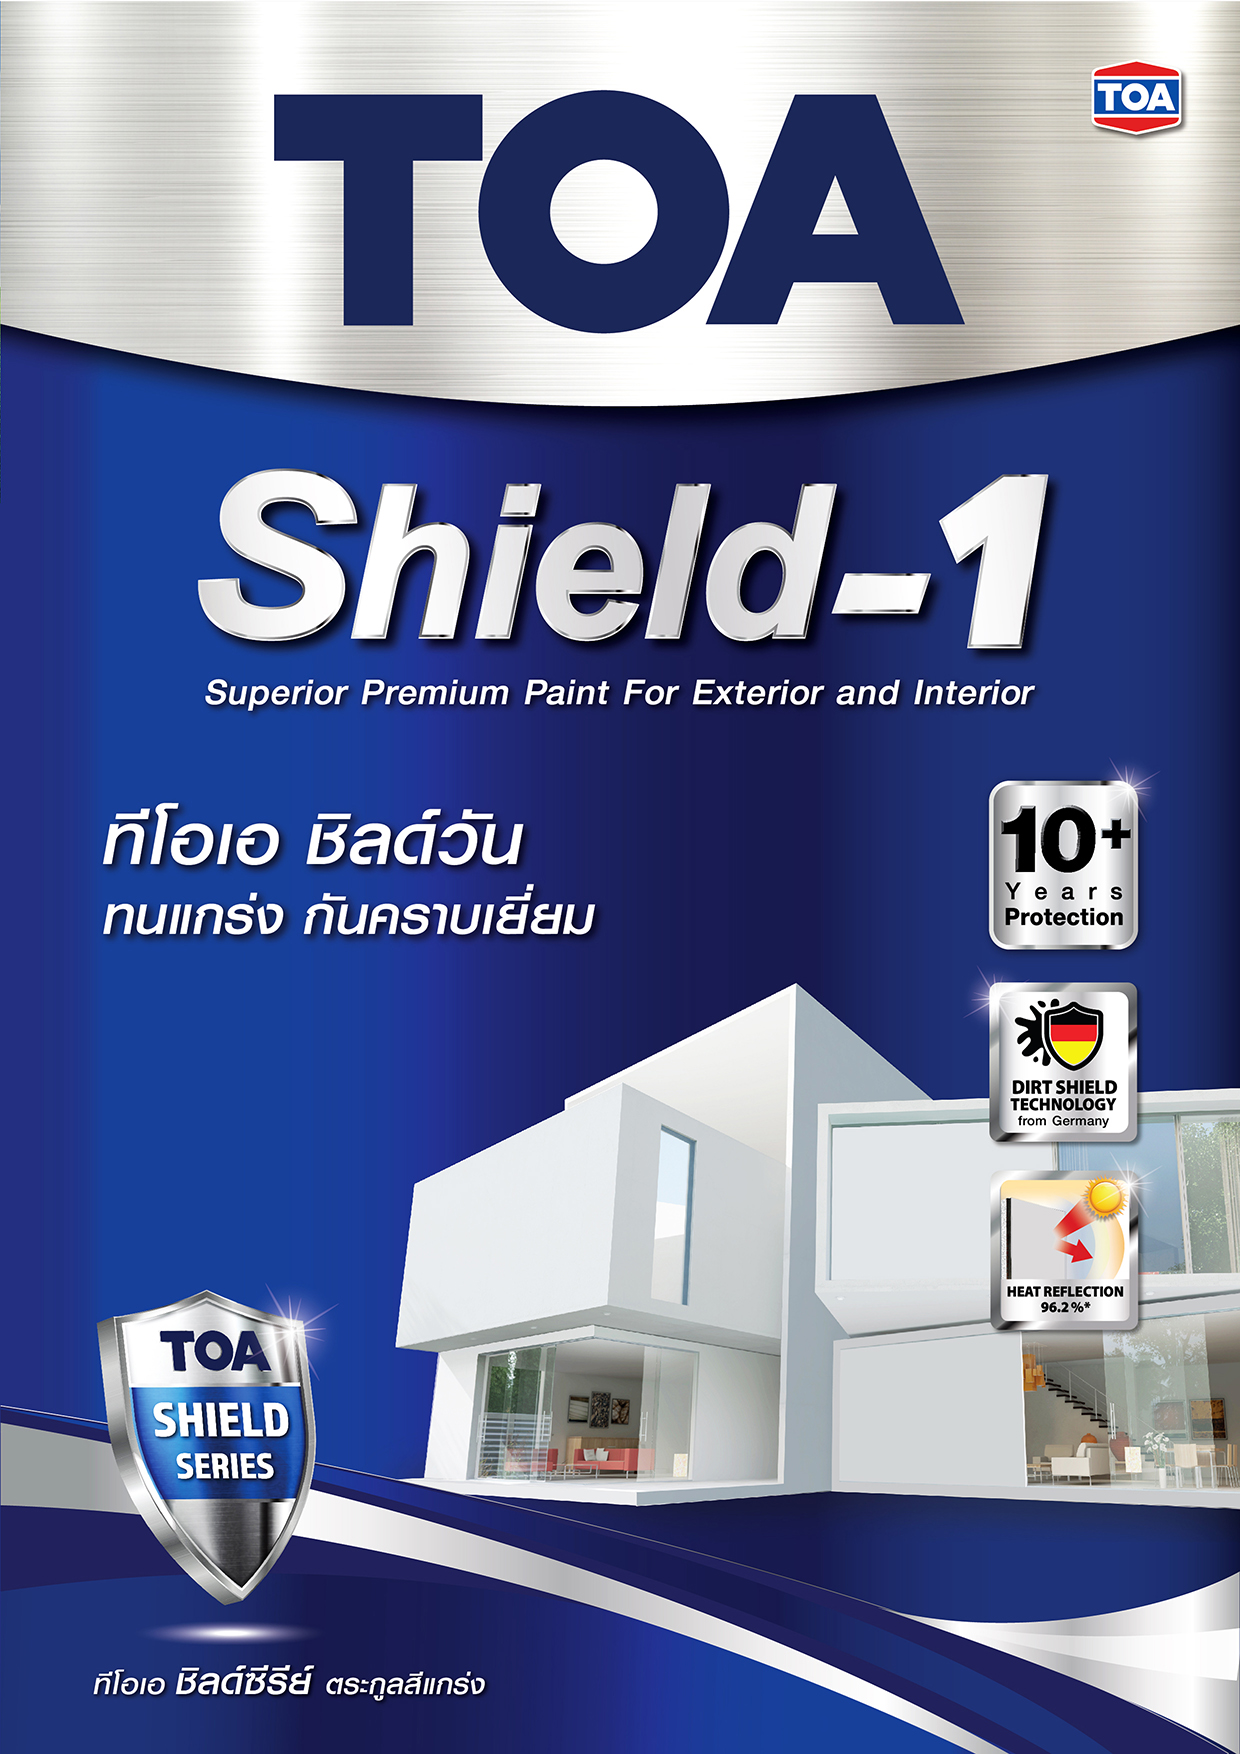 ทีโอเอ ชิลด์ วัน / TOA Shield 1